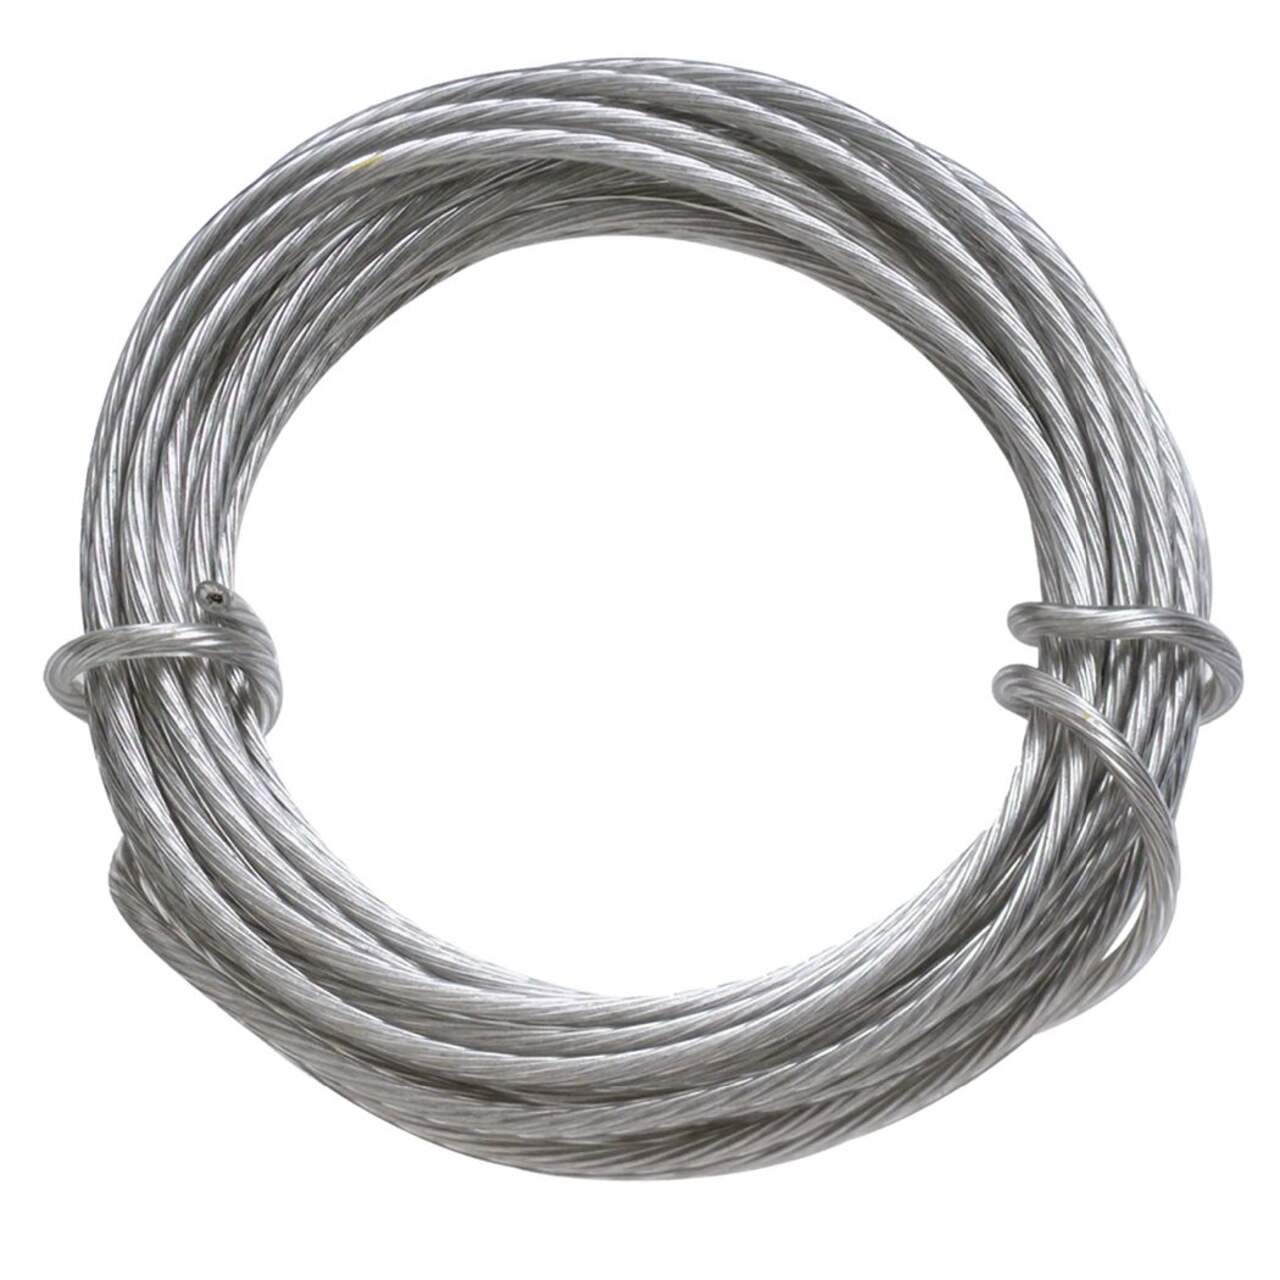 Hillman Soft Brass Wire 16 Gauge at